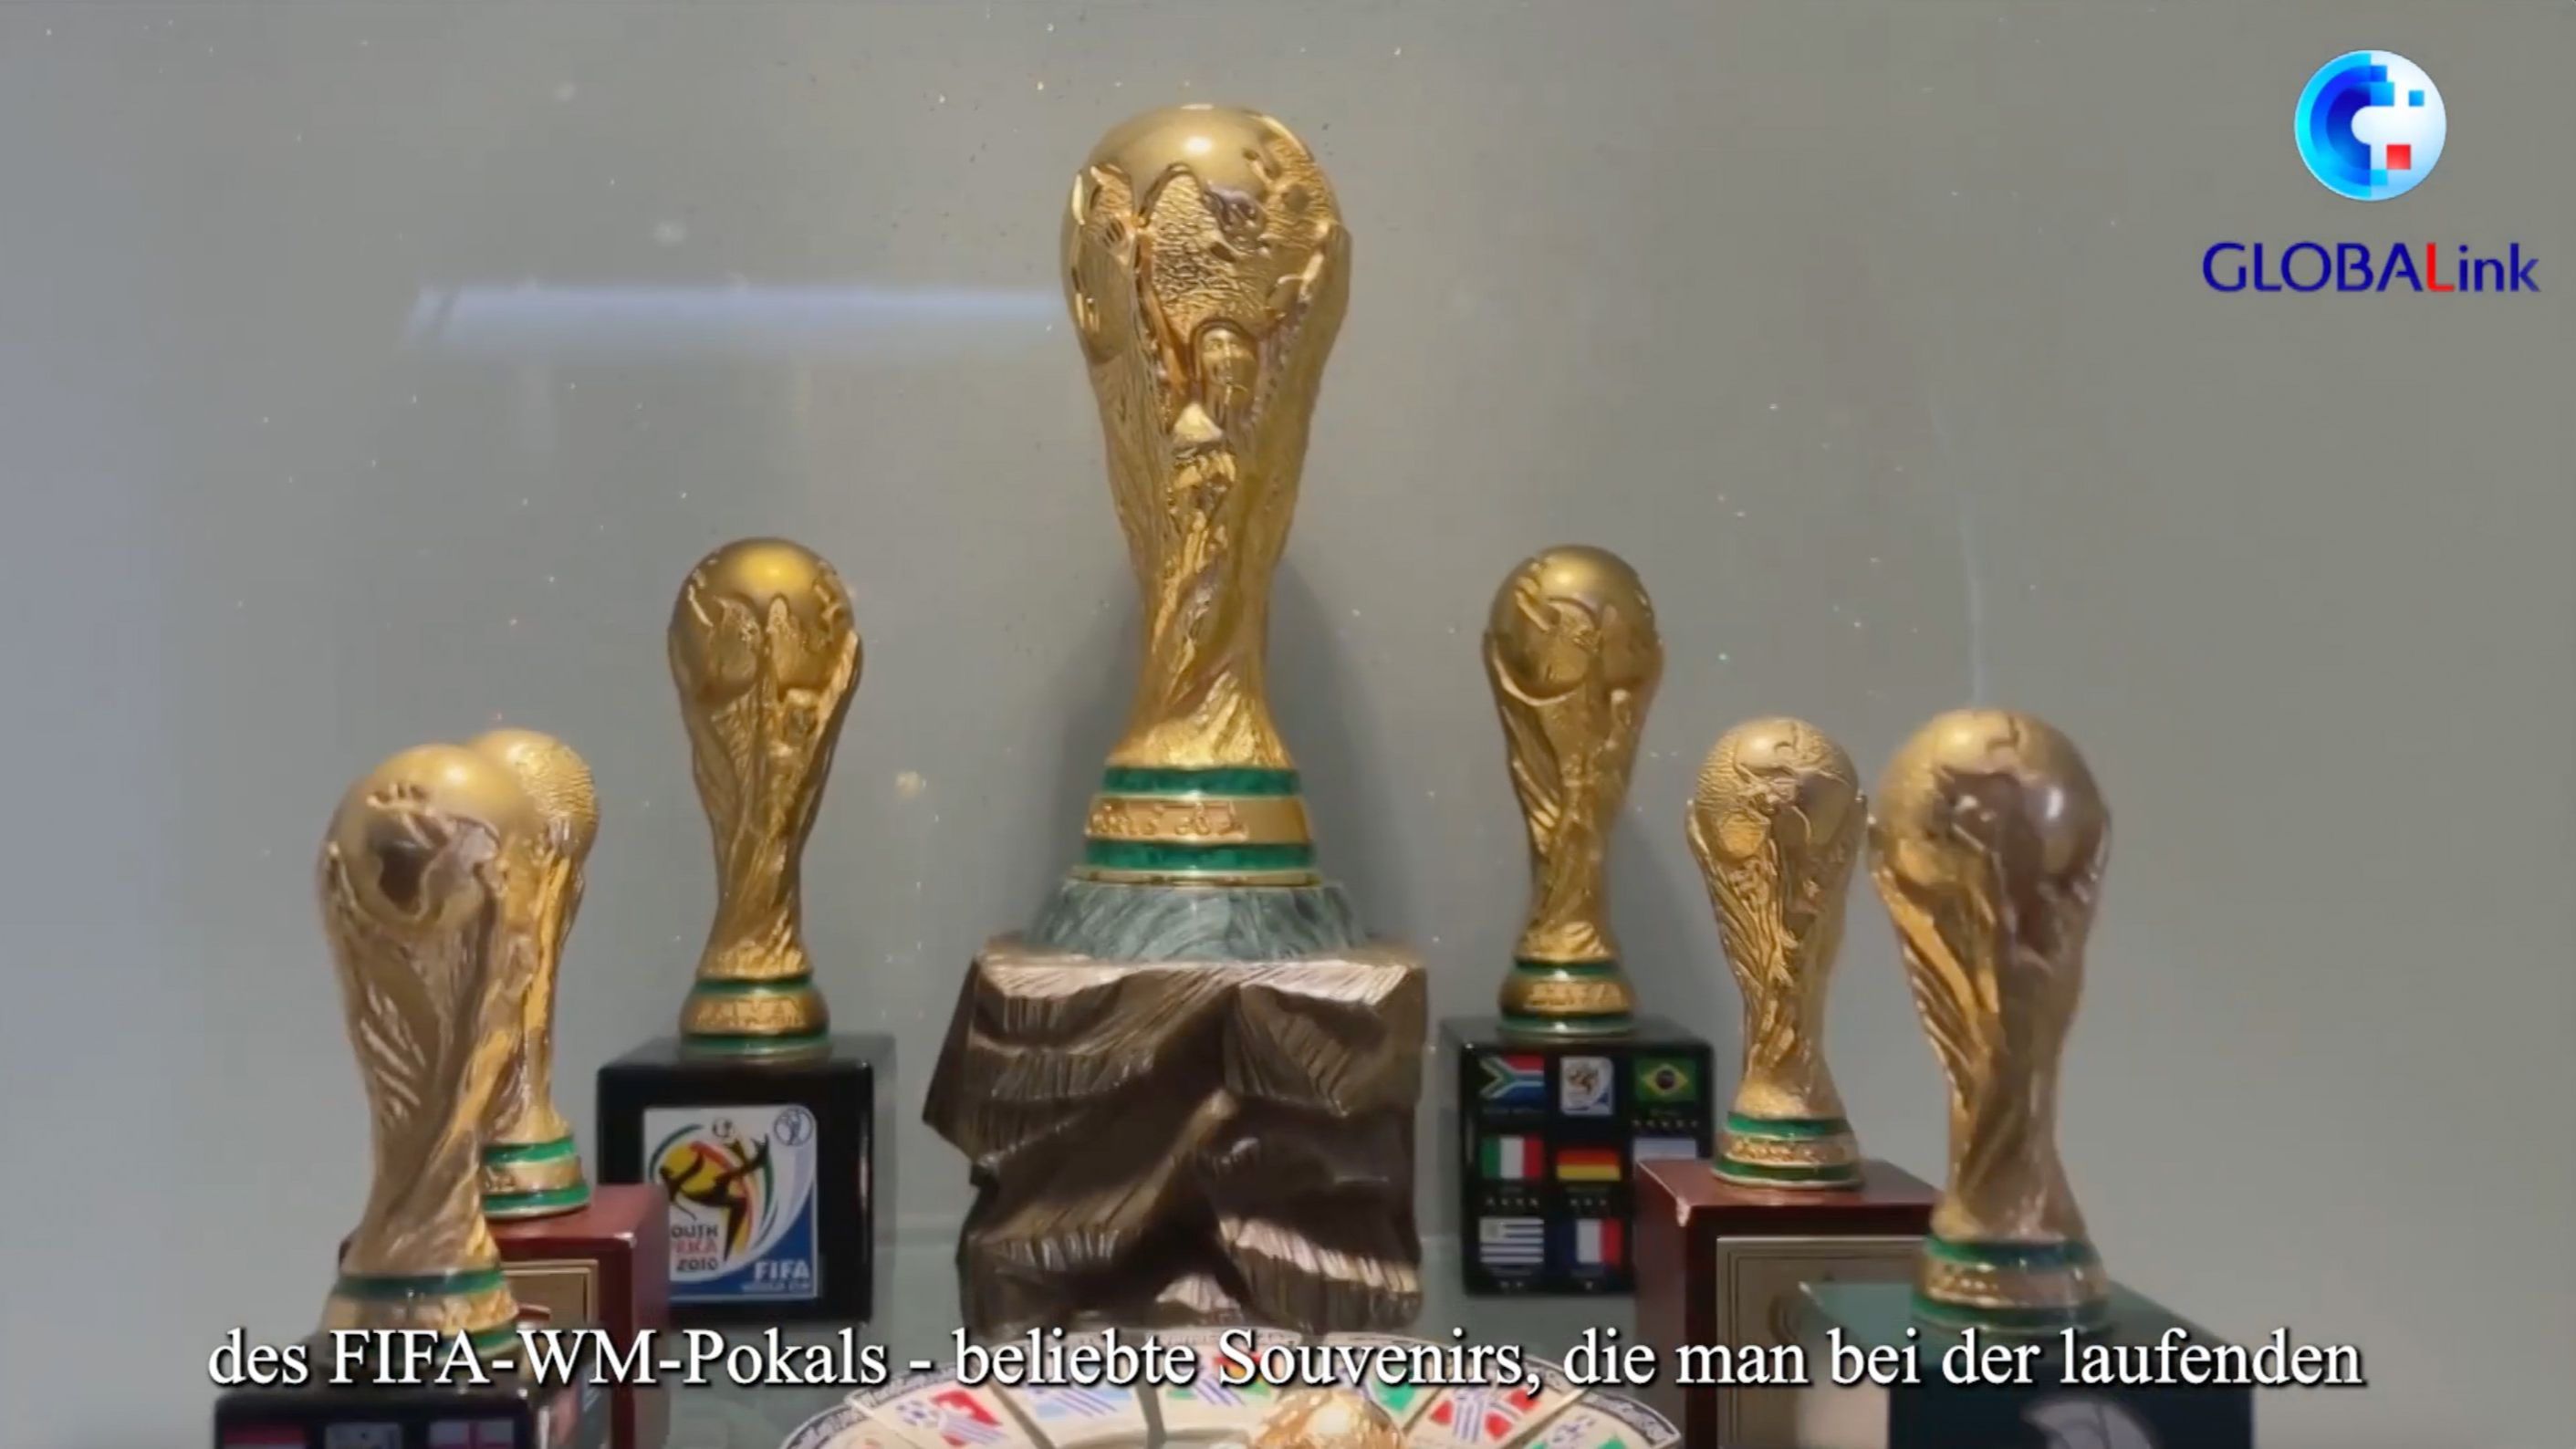 GLOBALink | Made-in-China-Souvenirs liegen bei der Fußballweltmeisterschaft voll im Trend